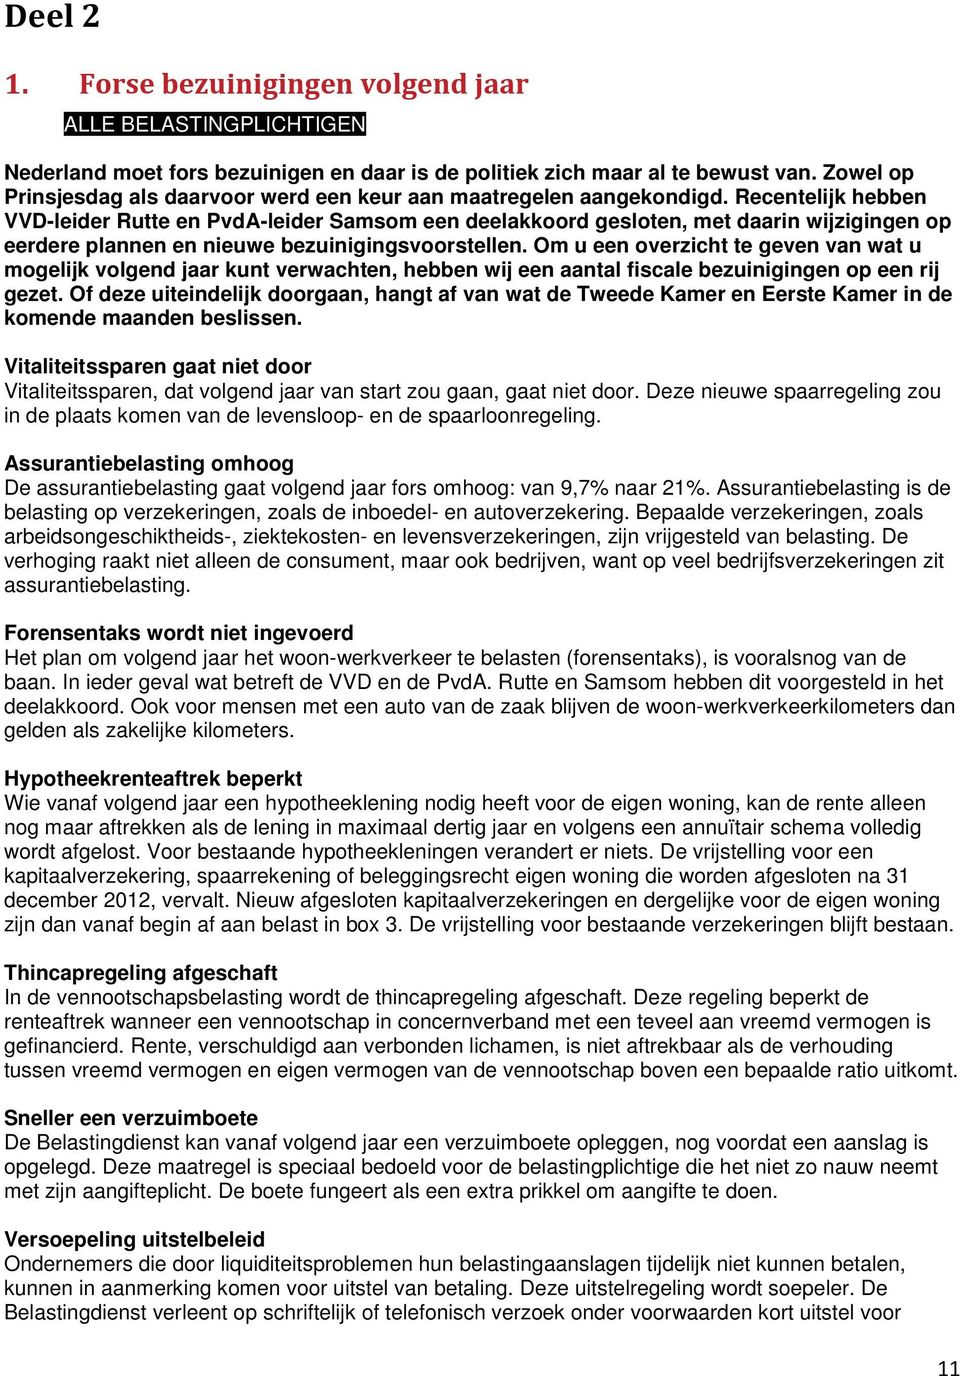 Recentelijk hebben VVD-leider Rutte en PvdA-leider Samsom een deelakkoord gesloten, met daarin wijzigingen op eerdere plannen en nieuwe bezuinigingsvoorstellen.